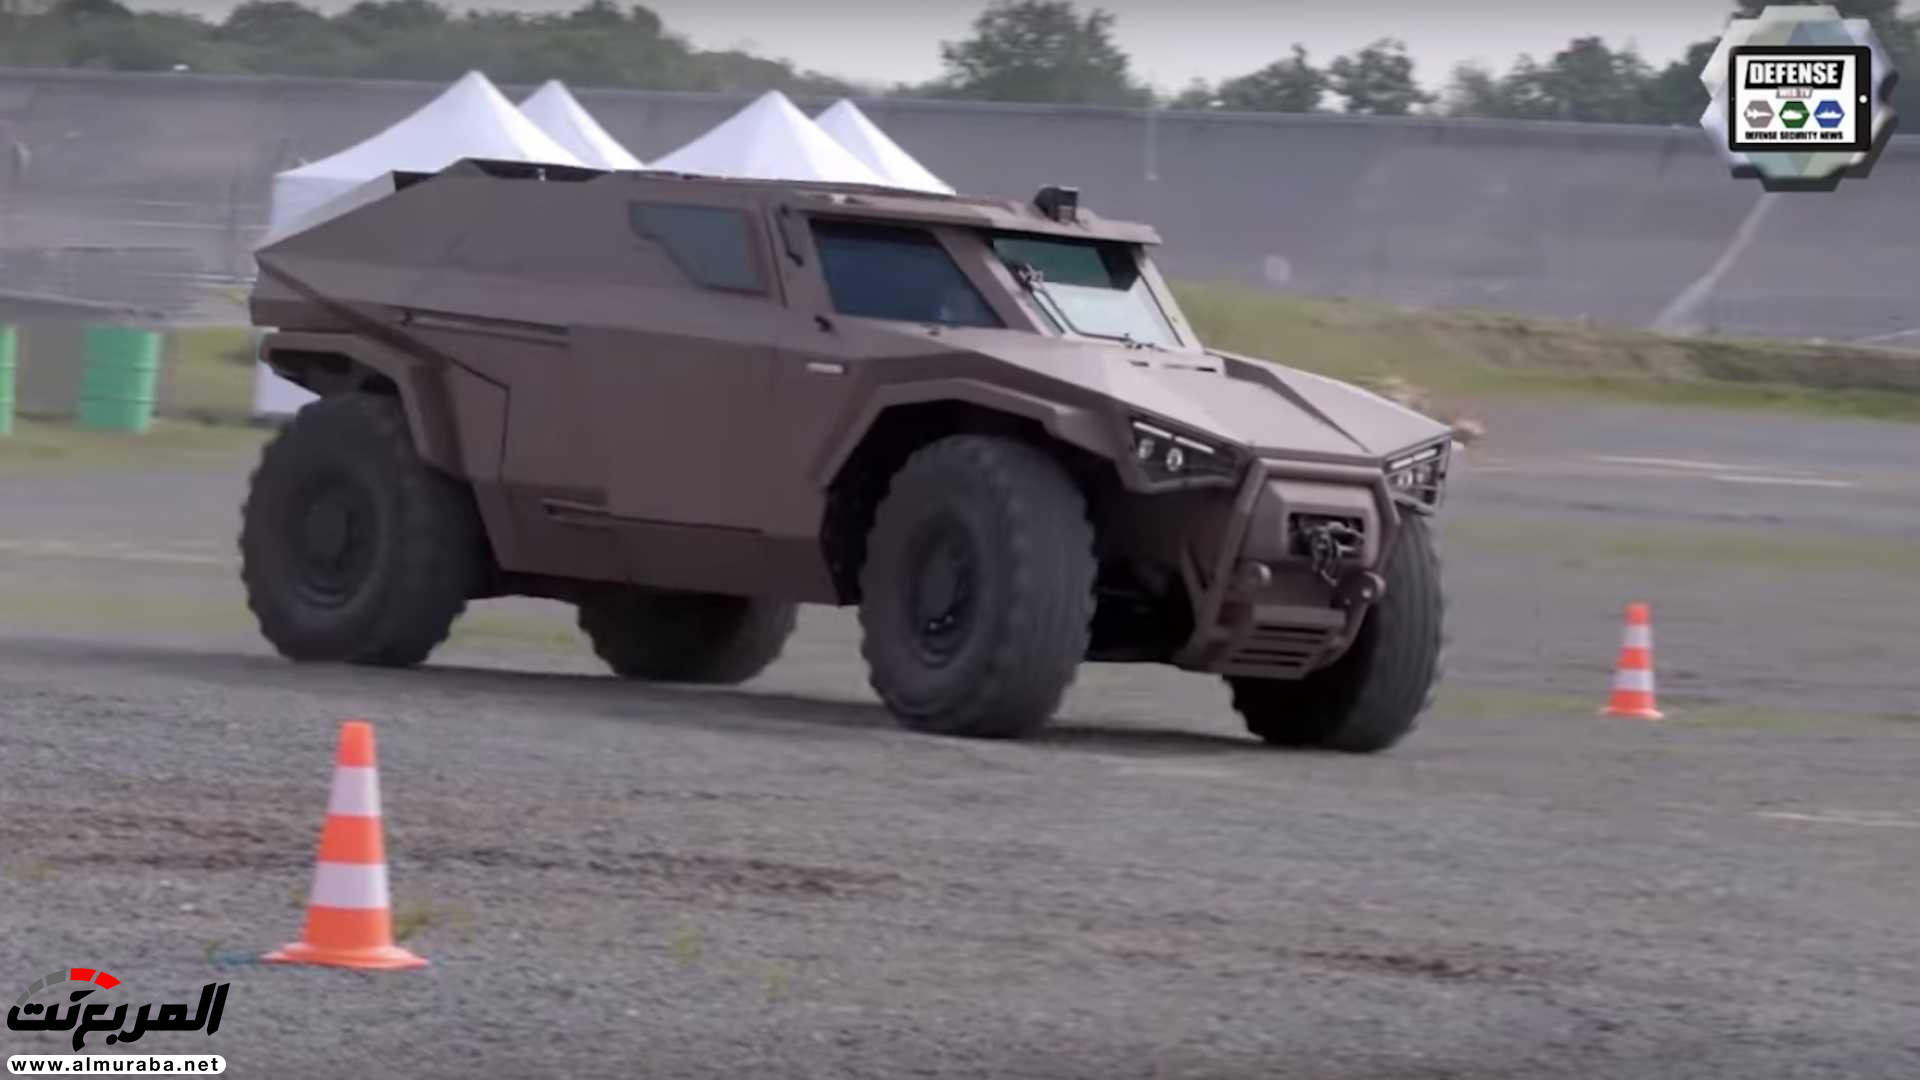 "بالفيديو والصور" فولفو صنعت سيارة عسكرية تنافس همر 17